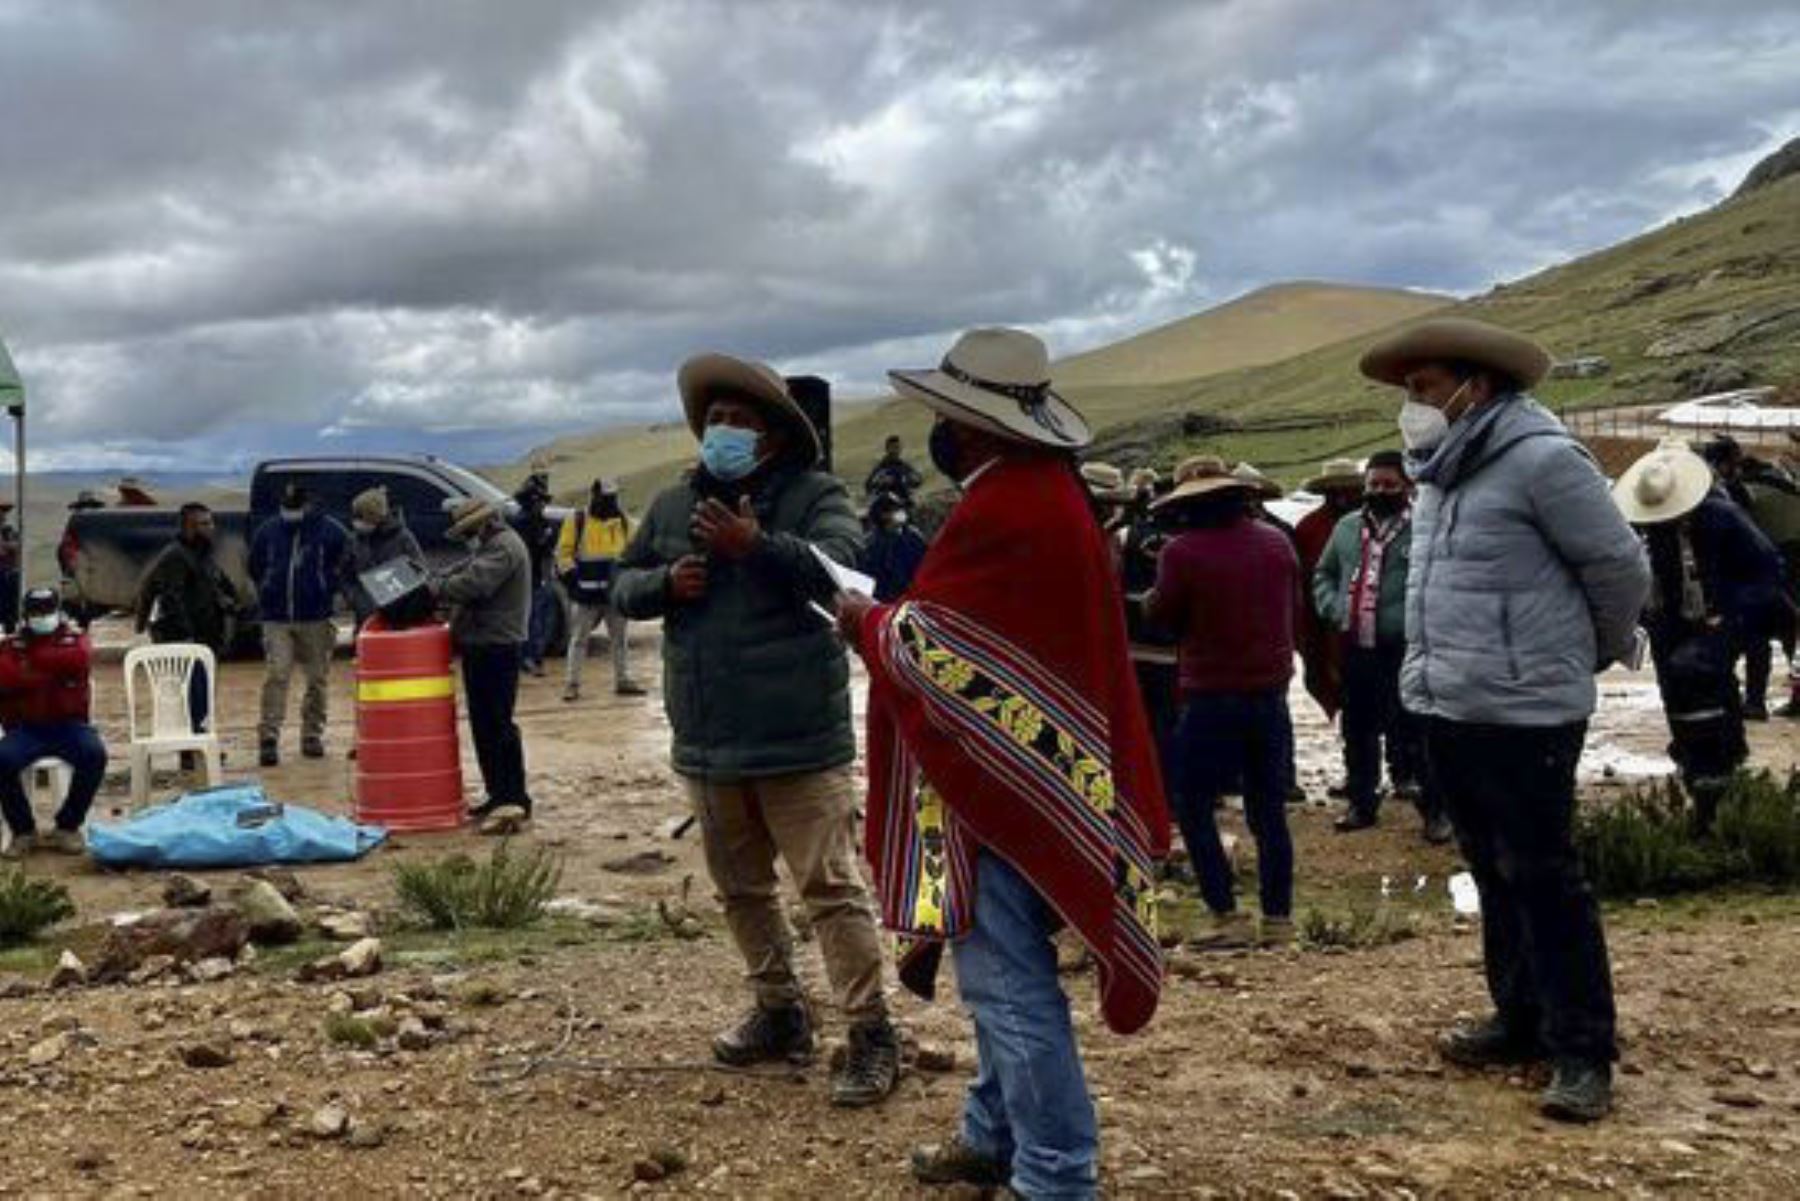 La reunión de coordinación se desarrolló en el sector Huisamarca del distrito de Quiñota, región Cusco. Foto: ANDINA/Minem.